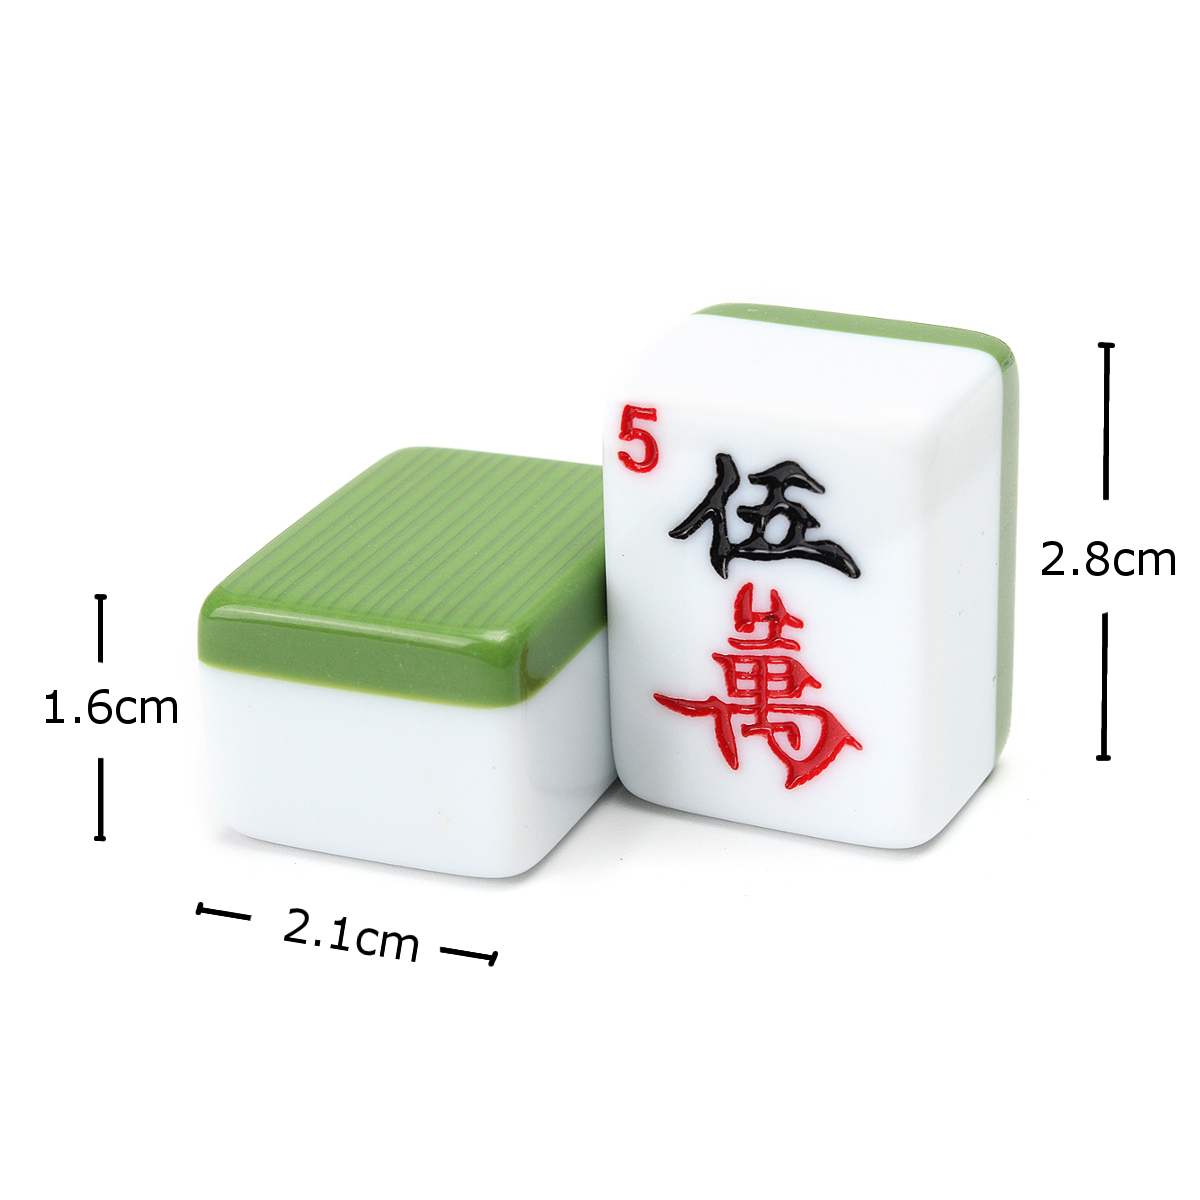 Portable-Vintage-Collection-Chinese-Mahjong-Rare-Game-144-Tiles-Mah-Jong-Set-1706671-3